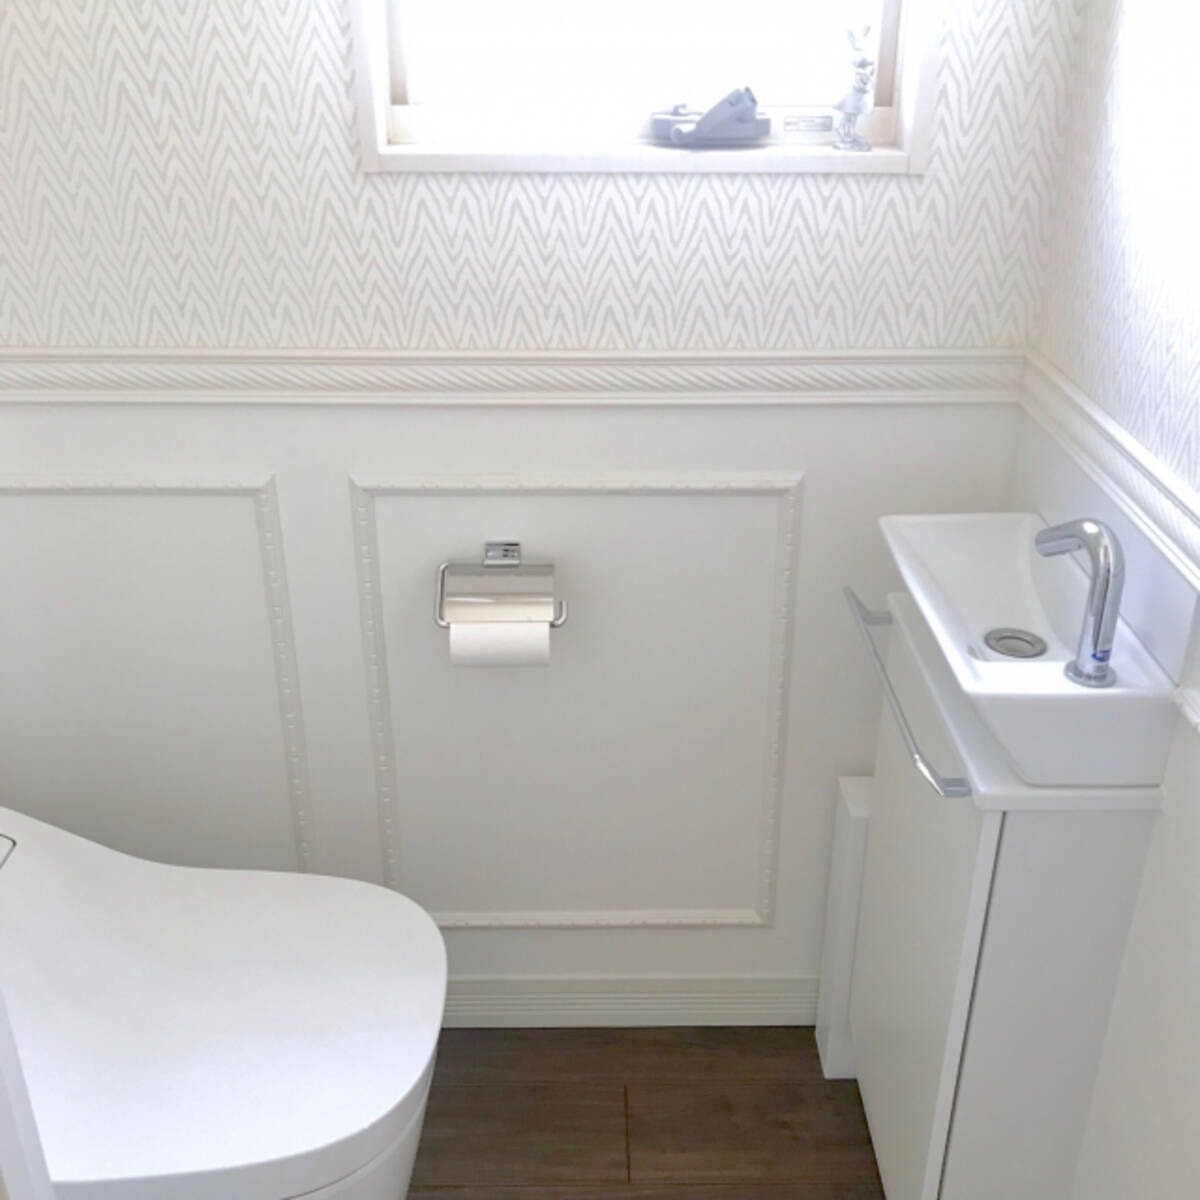 女性らしく上品な空間に シャビーシックなトイレの作り方 ローリエプレス